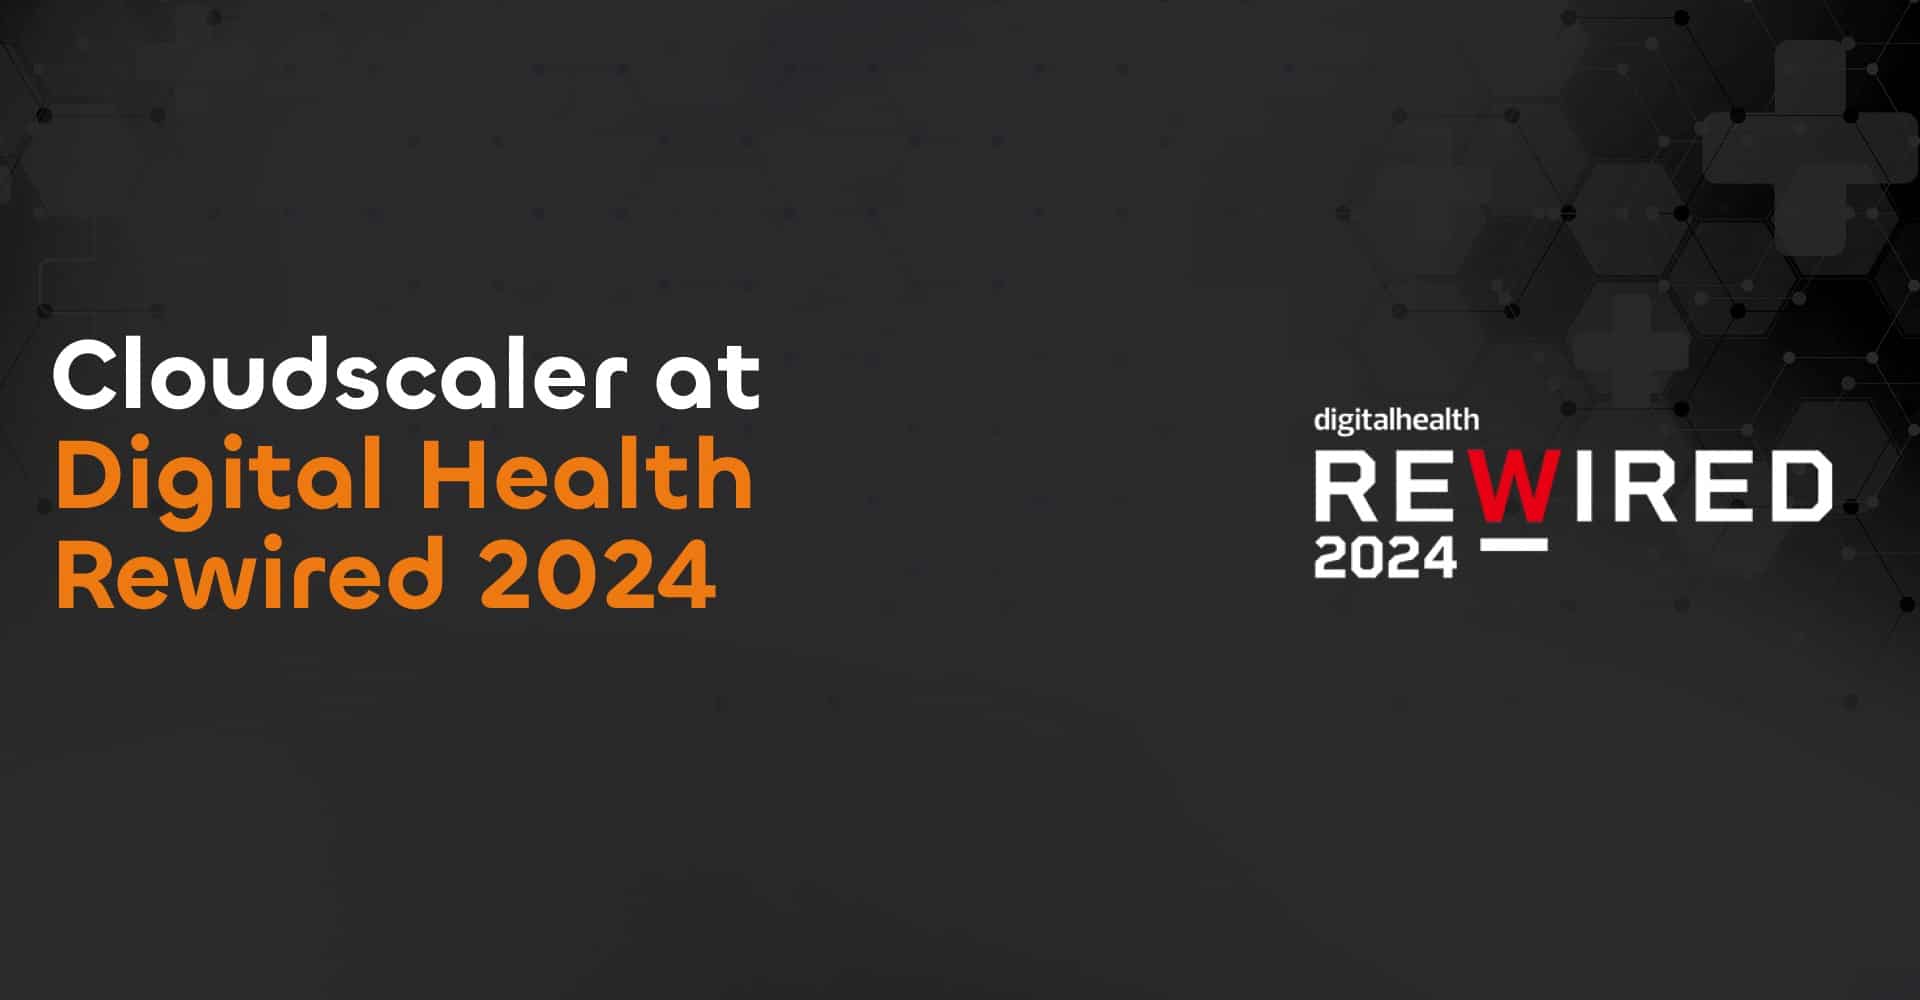 Cloudscaler at Digital Health Rewired 2024 Cloudscaler